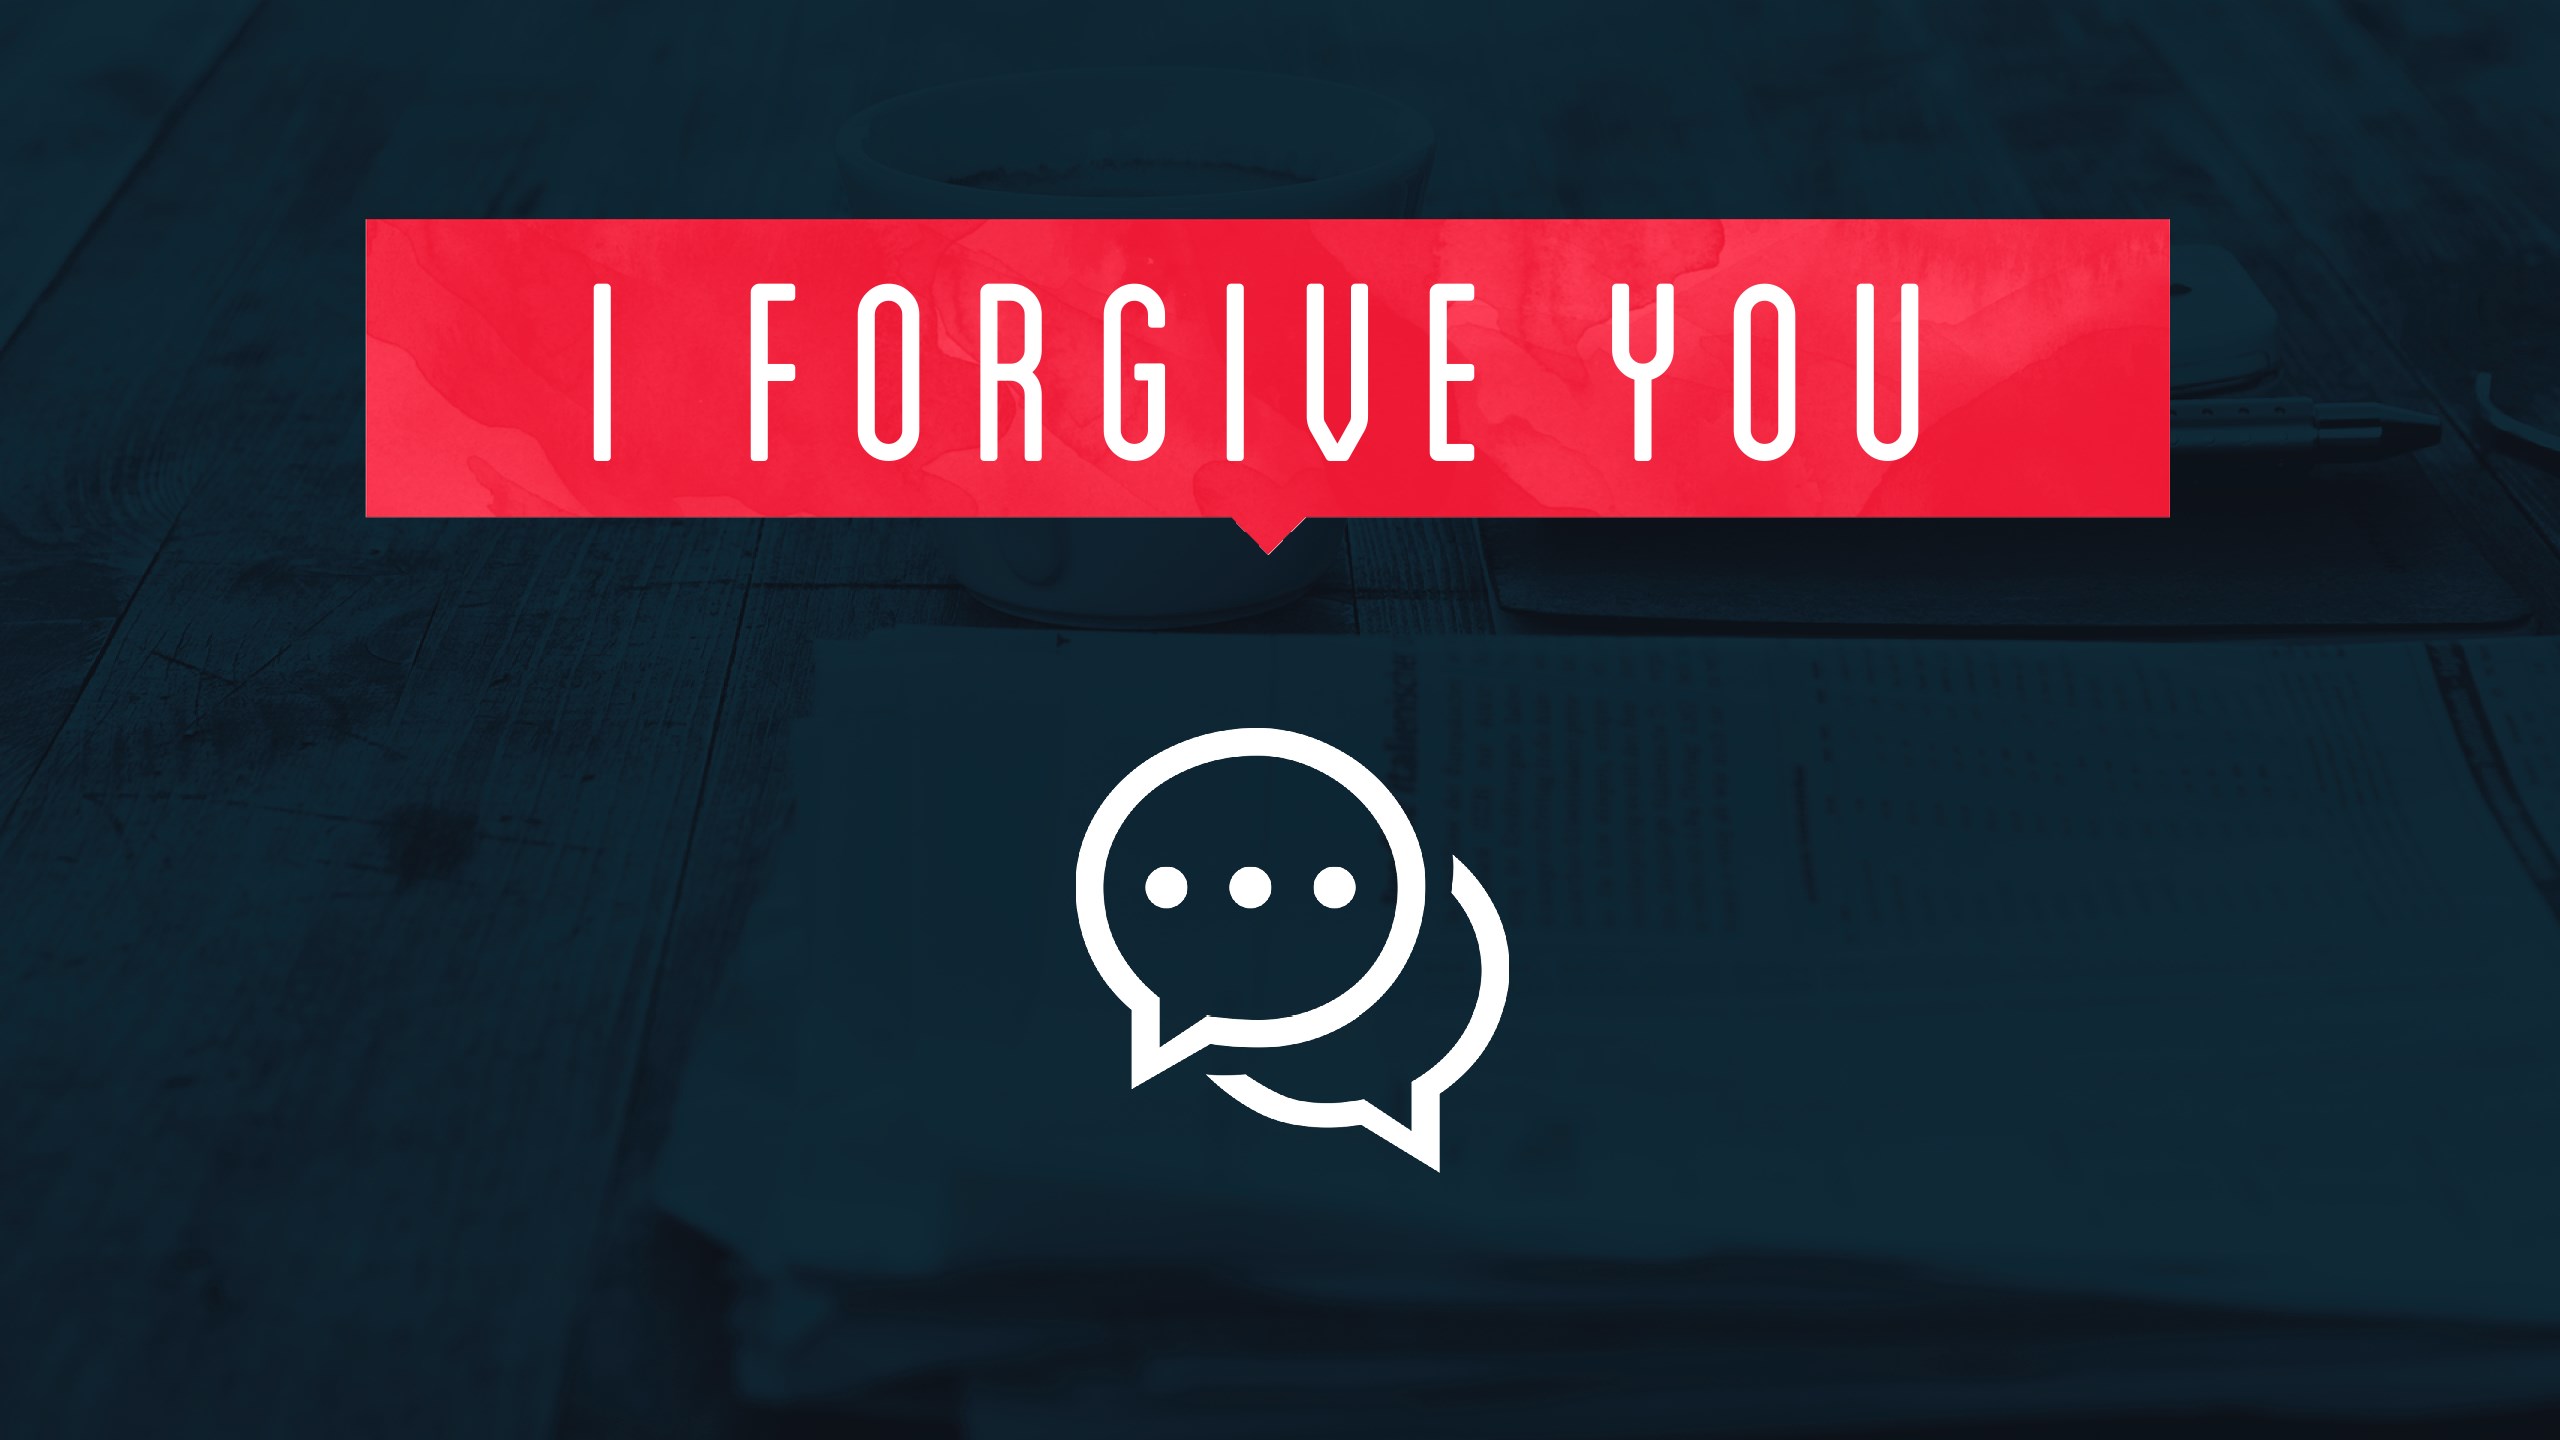 I Forgive you - "I Don't Forgive You"